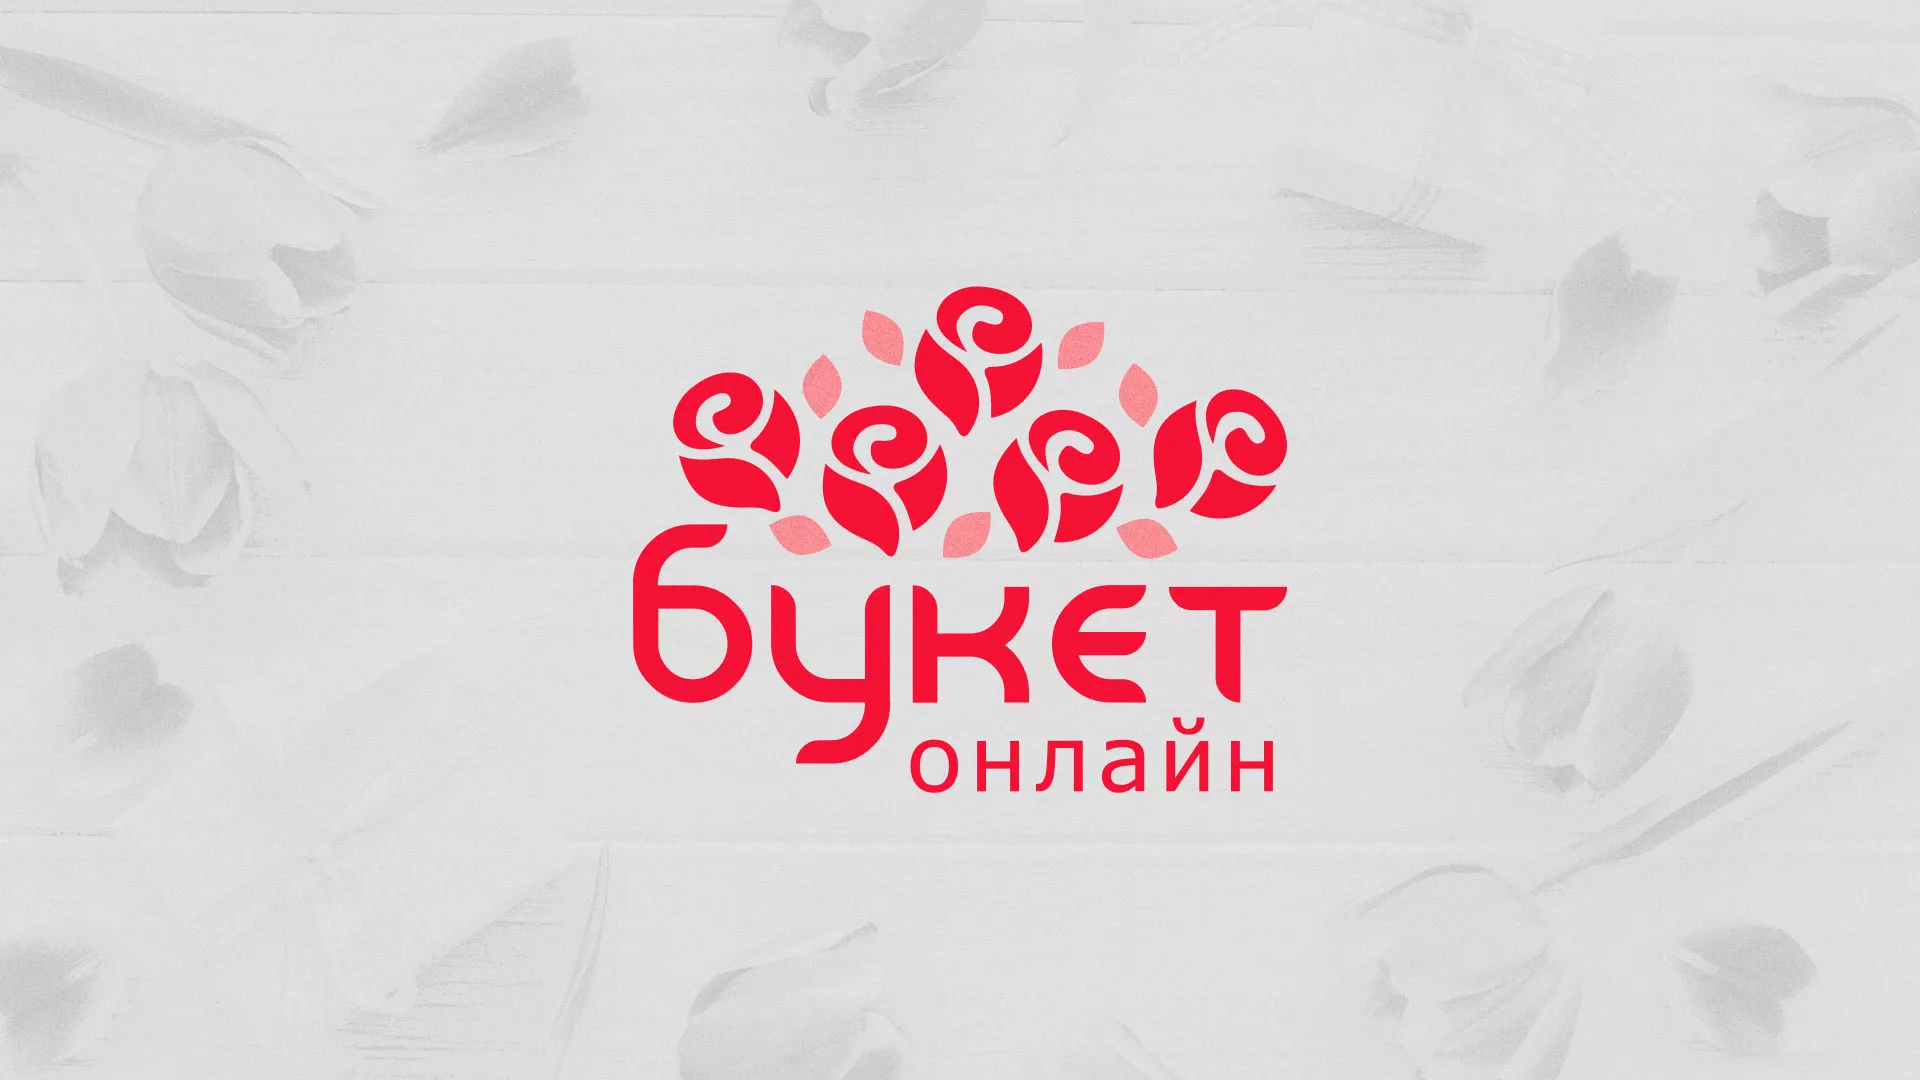 Создание интернет-магазина «Букет-онлайн» по цветам в Новомосковске